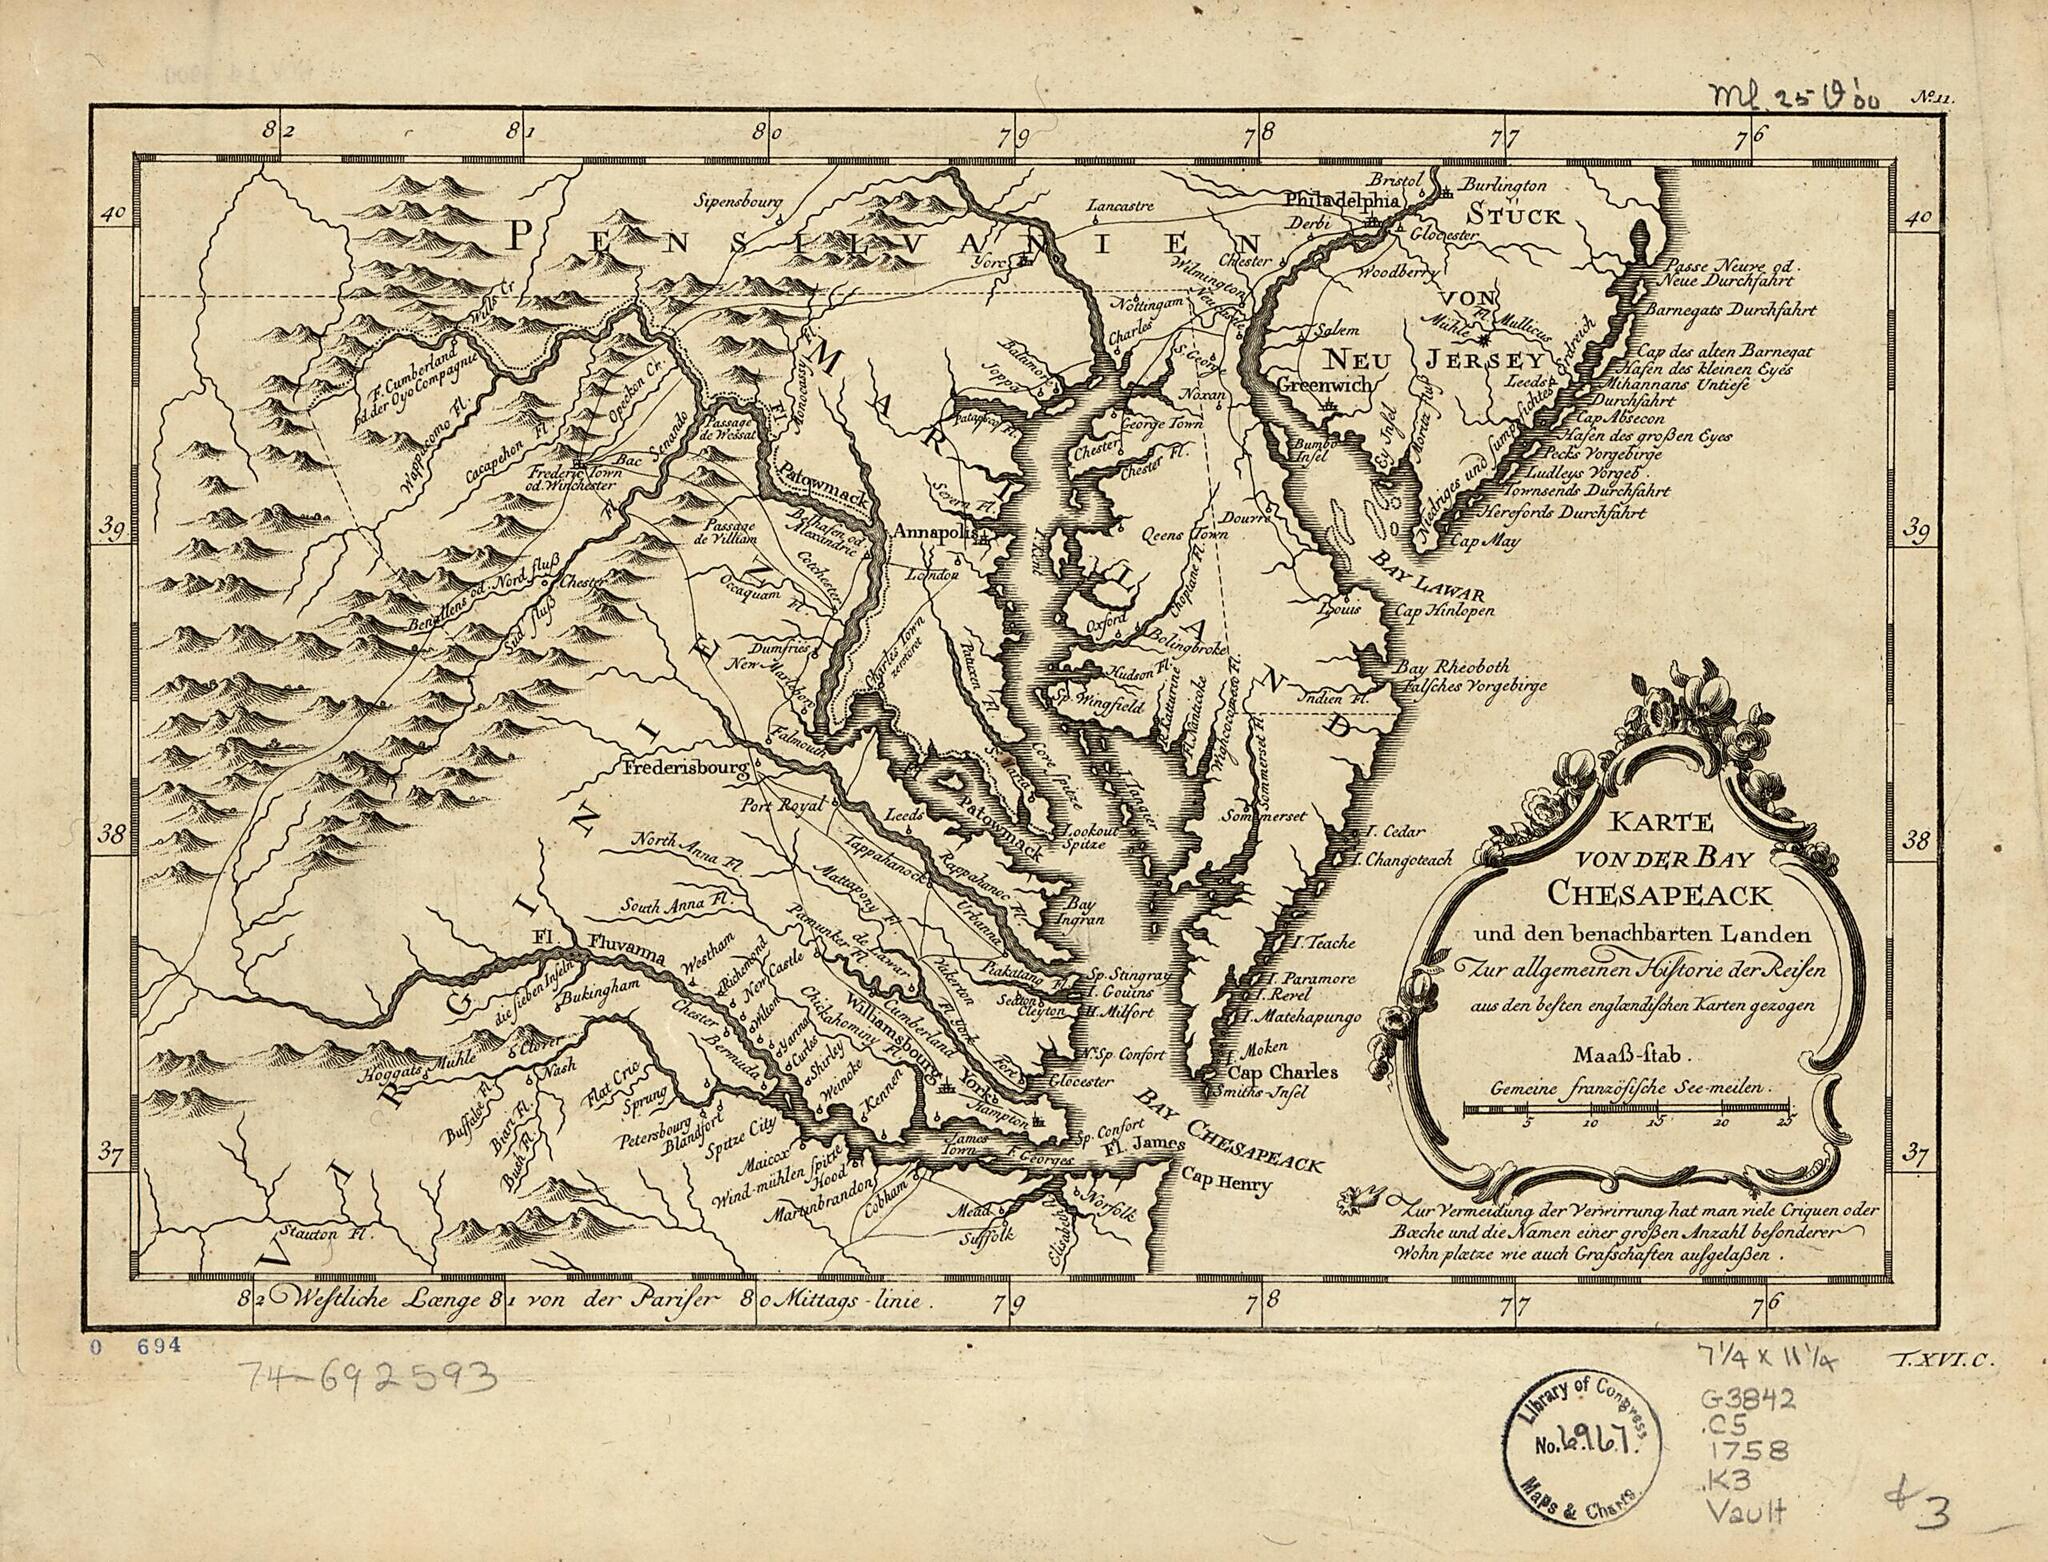 This old map of Karte Von Der Bay Chesapeack Und Den Benachbarten Landen Zur Allegemeinen Historie Der Reisen Aus Den Besten Englændischen Karten Gezogen from 1758 was created by  in 1758